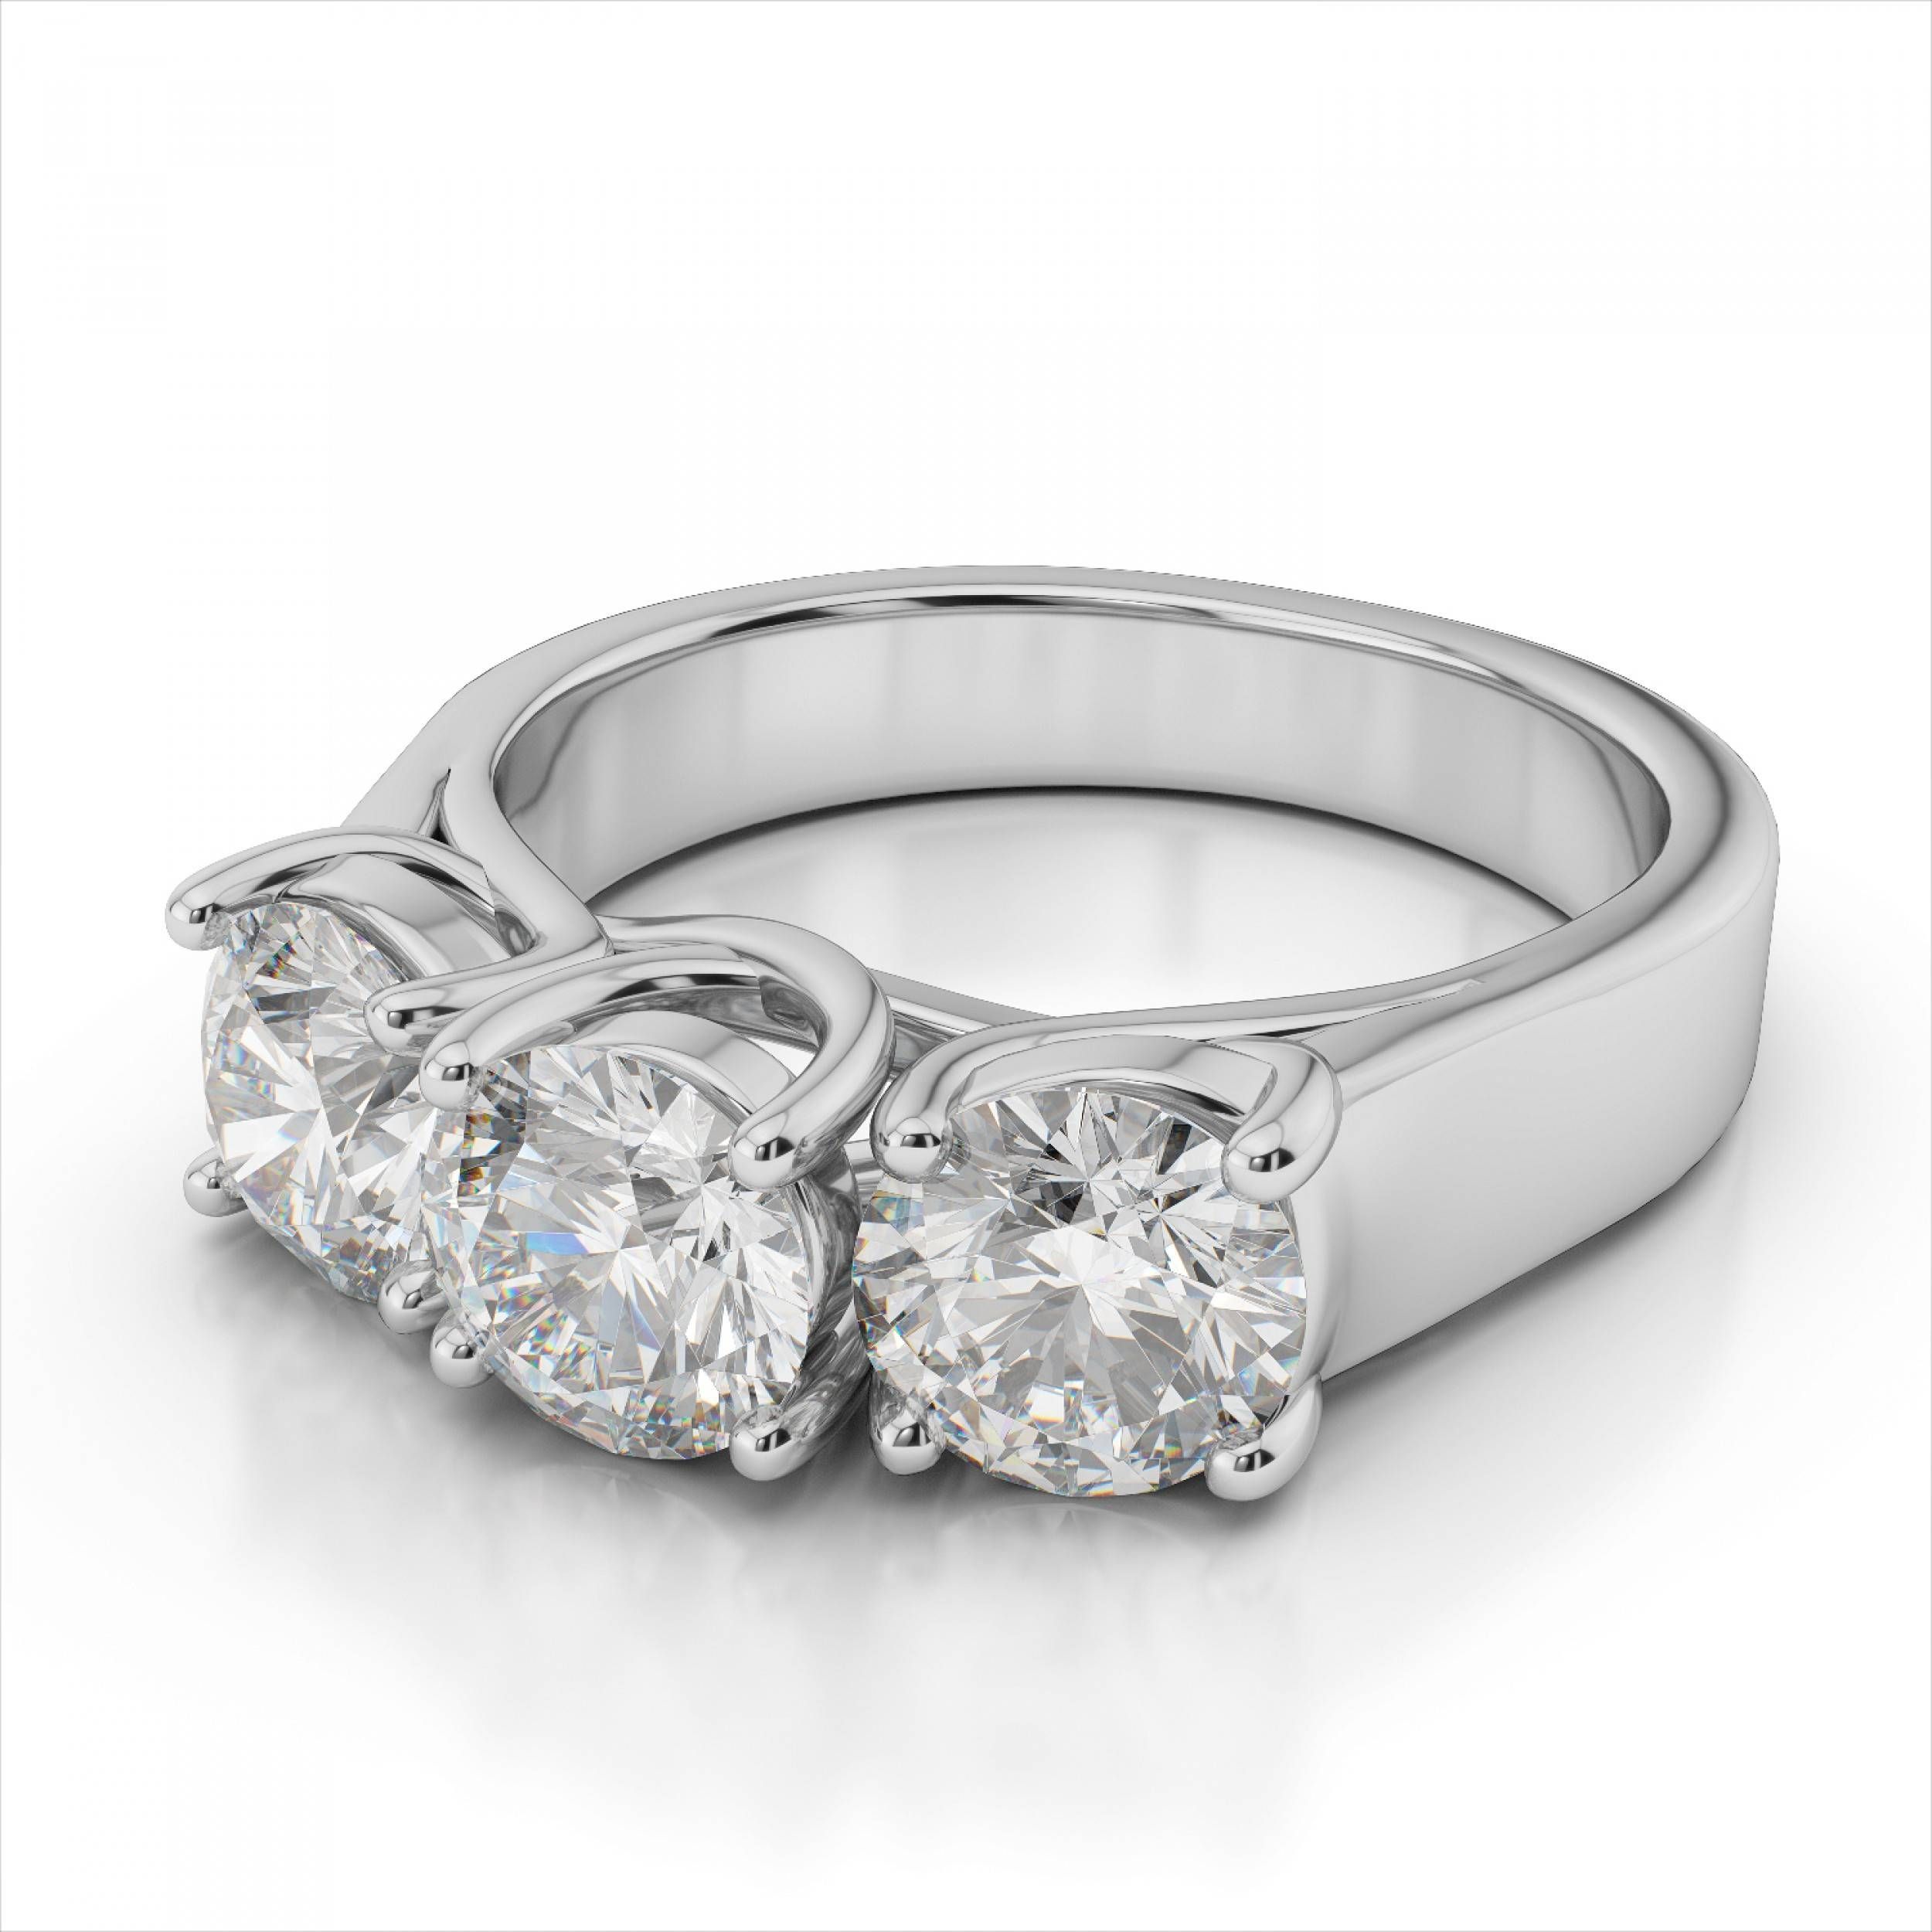 Three Stone Anniversary Diamond Rings | Wedding, Promise, Diamond Regarding Most Popular 3 Carat Diamond Anniversary Rings (View 2 of 25)